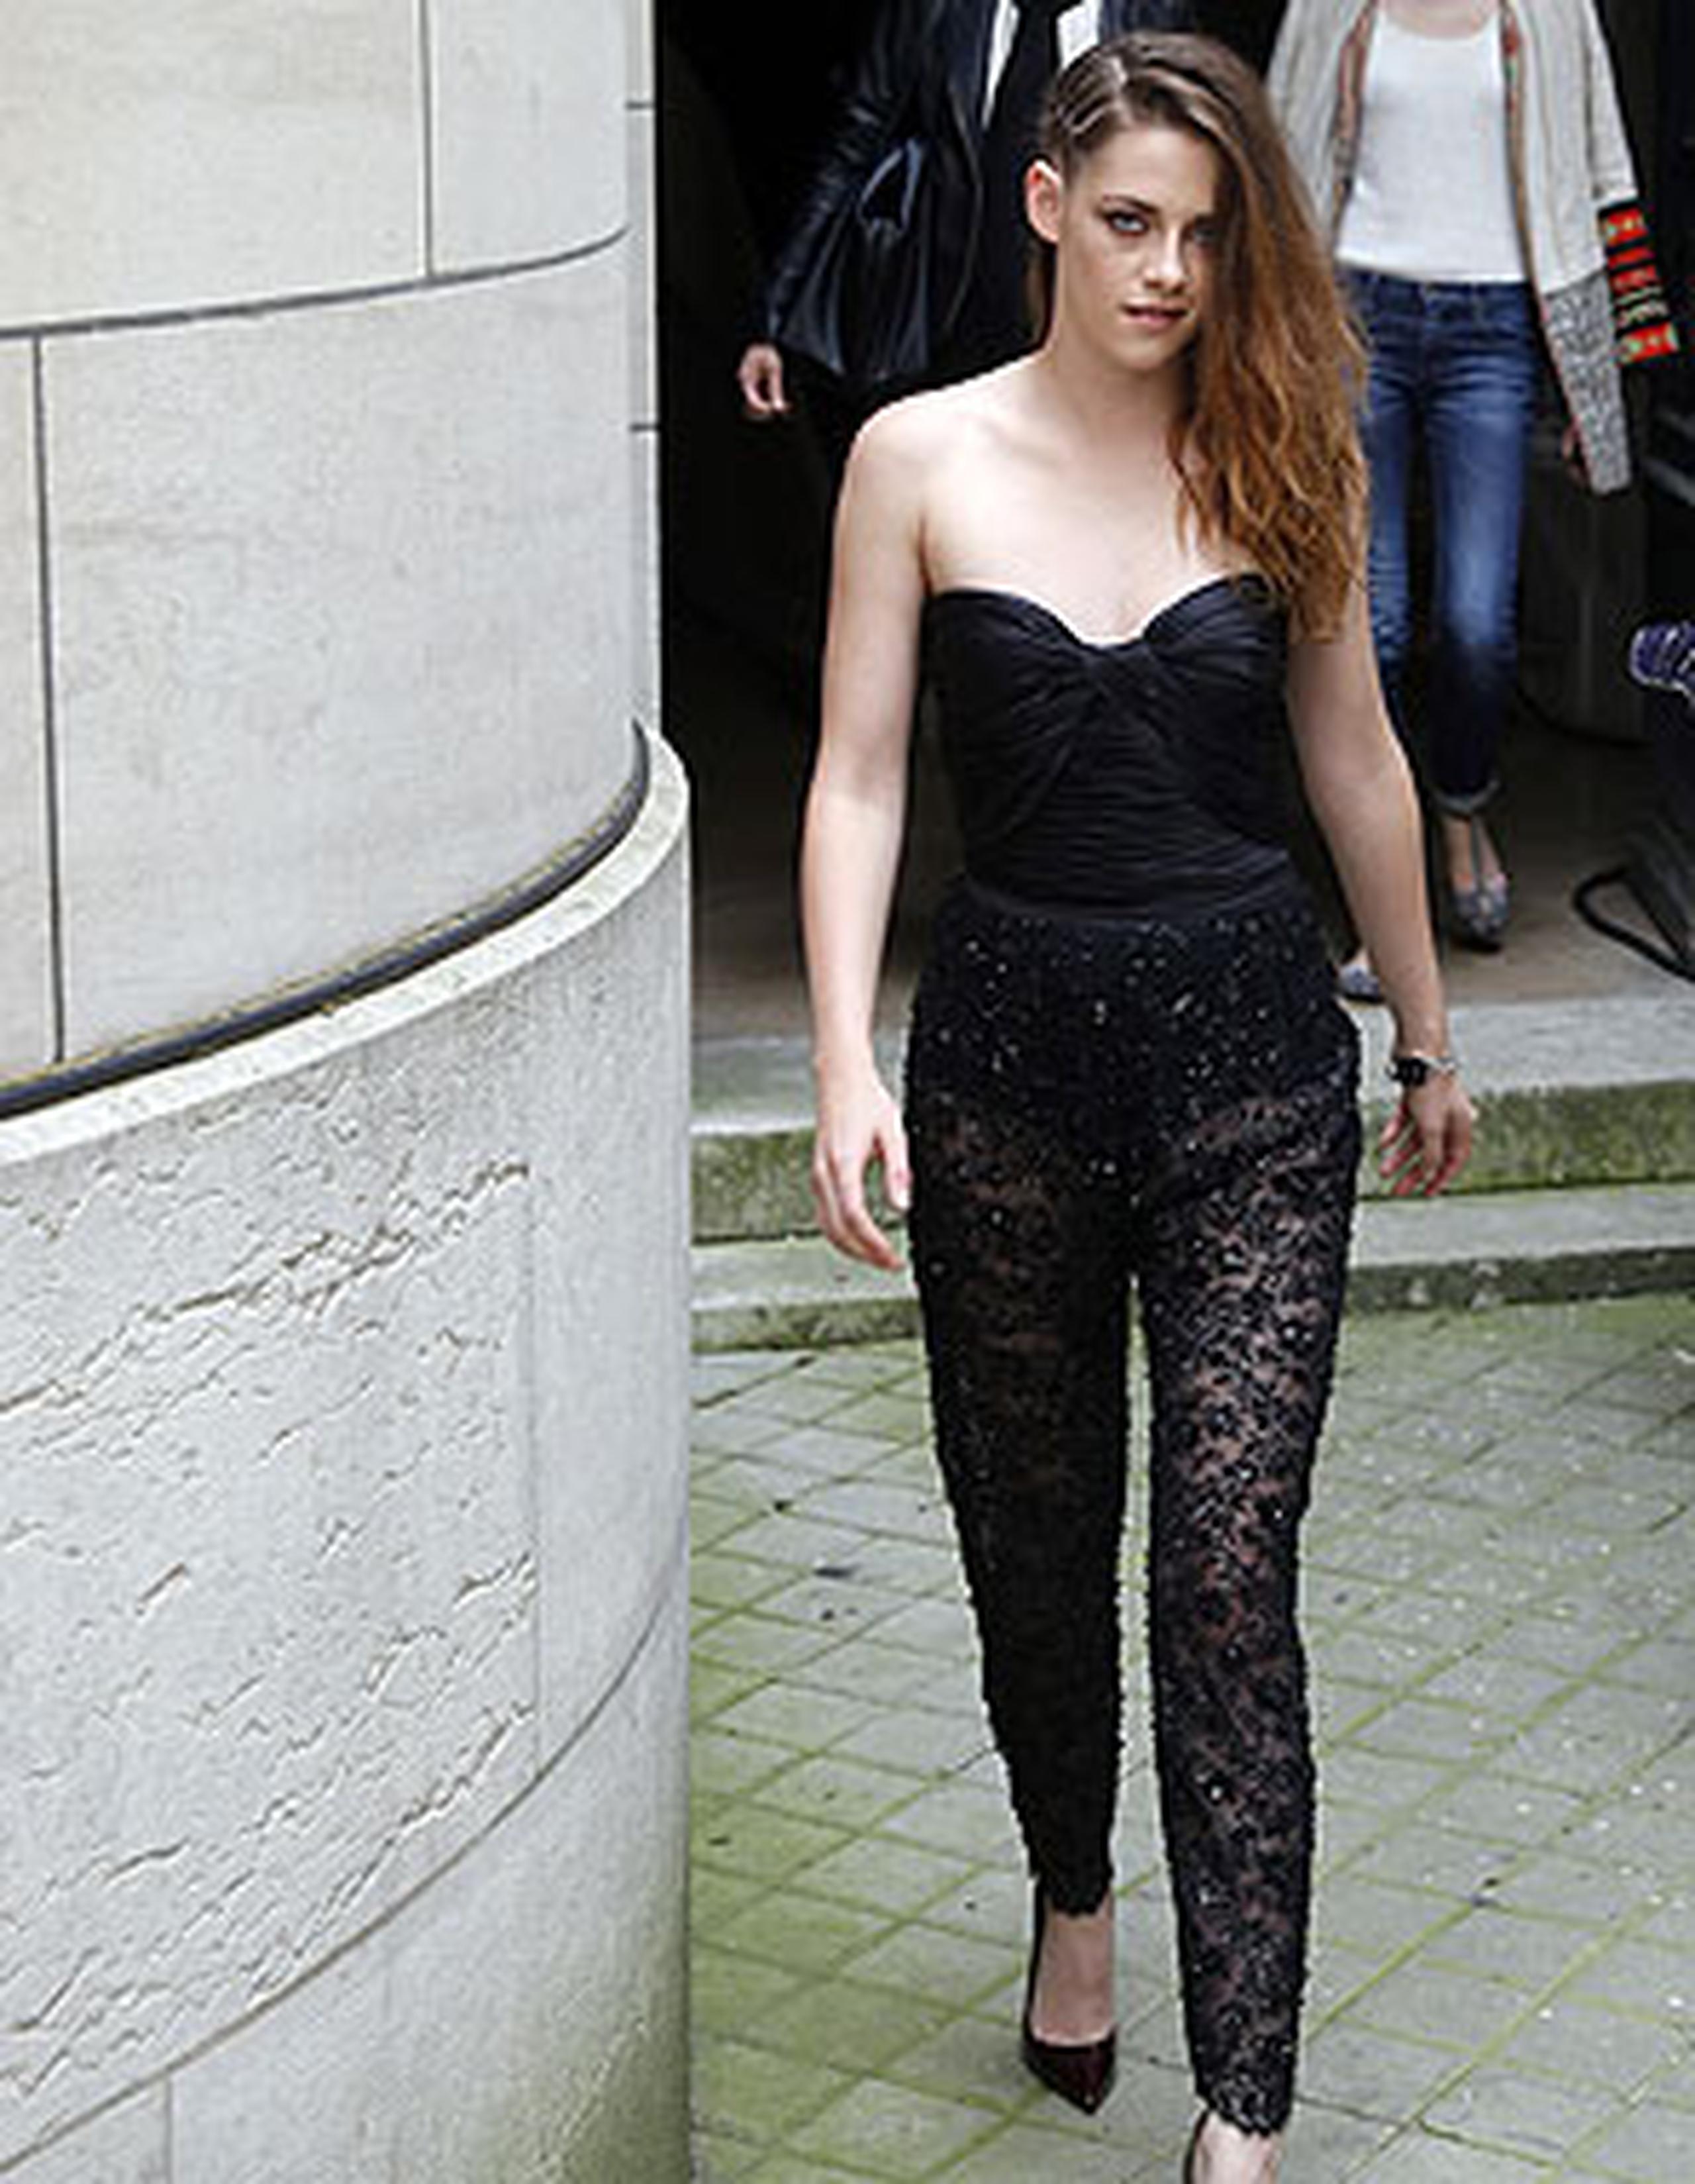 Stewart vistió un modelo negro, con mallas de encaje y corpiño de seda, en línea con el que llevó del mismo modisto a finales del año pasado en el estreno en Londres de "The Twilight Saga: Breaking Dawn - Part 2". (EFE)